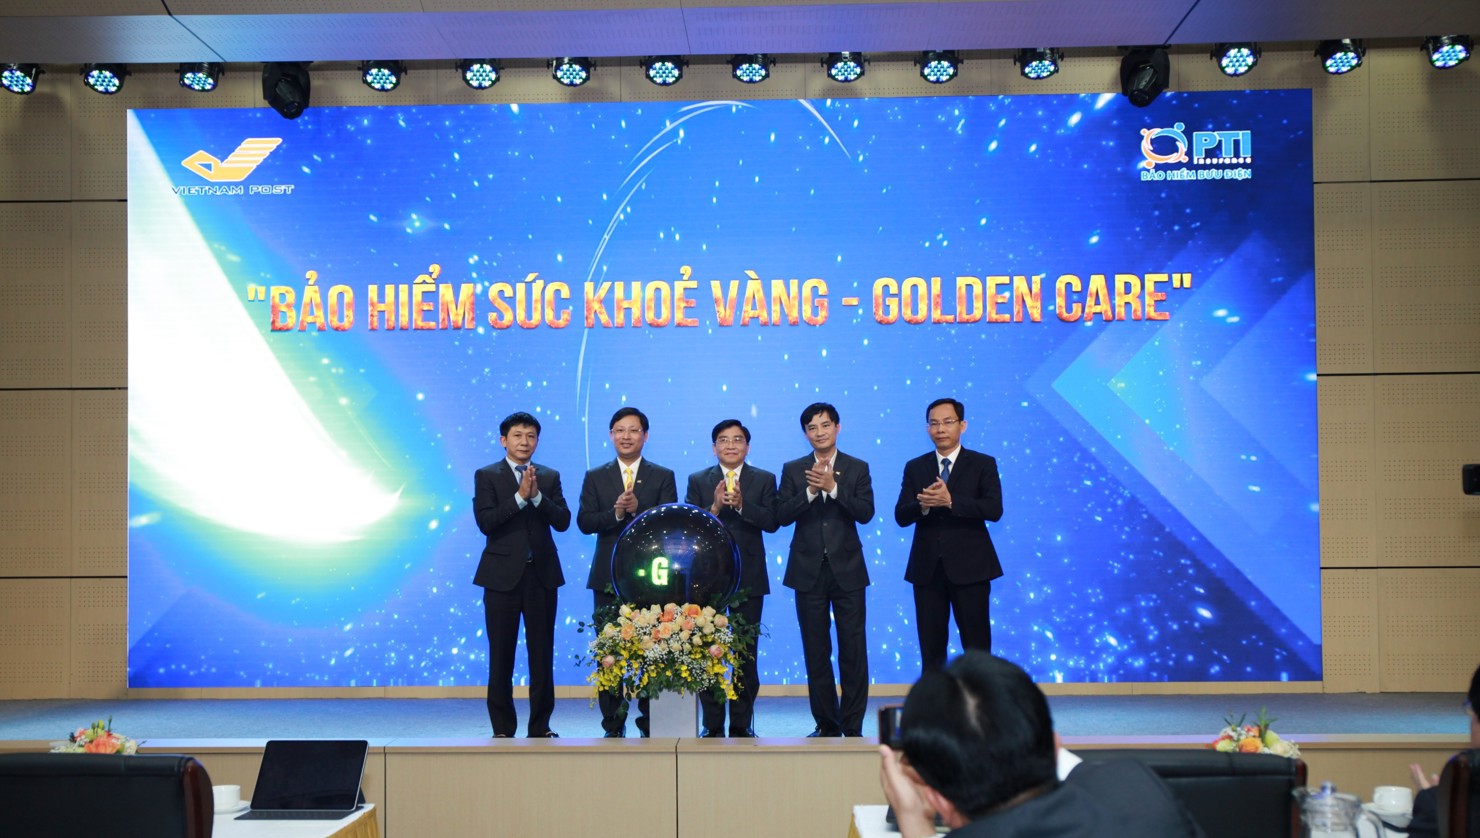 PTI ra mắt sản phẩm Golden Care - bảo hiểm chăm sóc sức khỏe vàng dành cho người đang sinh sống và làm việc tại Việt Nam từ 1 ngày tuổi đến 60 tuổi.